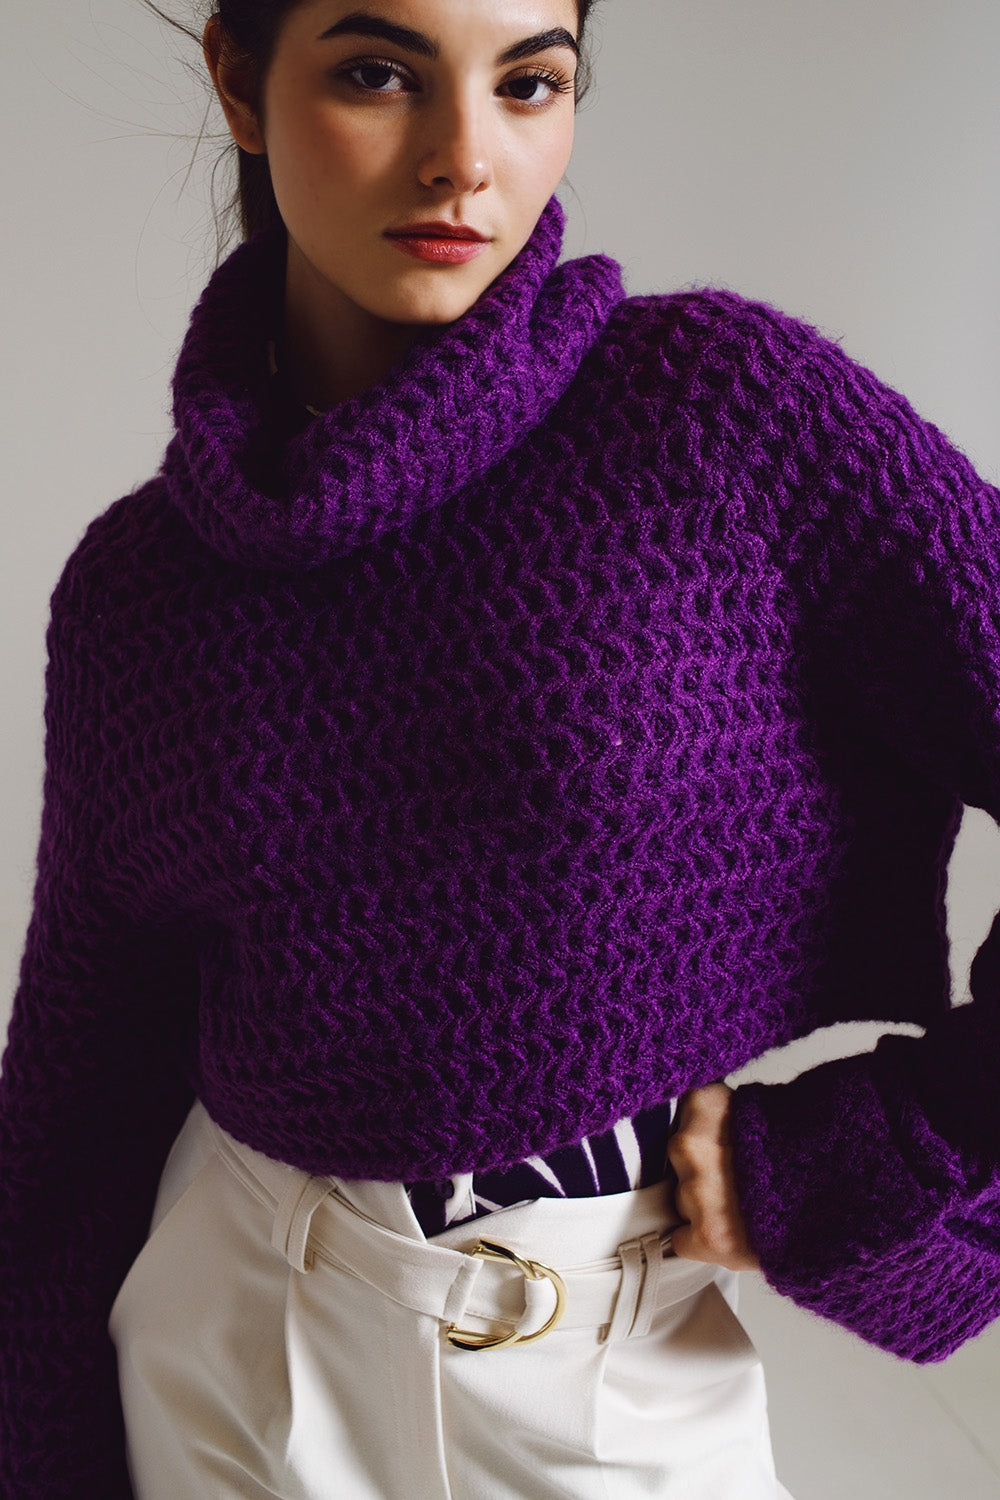 Maglione a maglia con collo a dolcevita e polsini arrotolati in viola